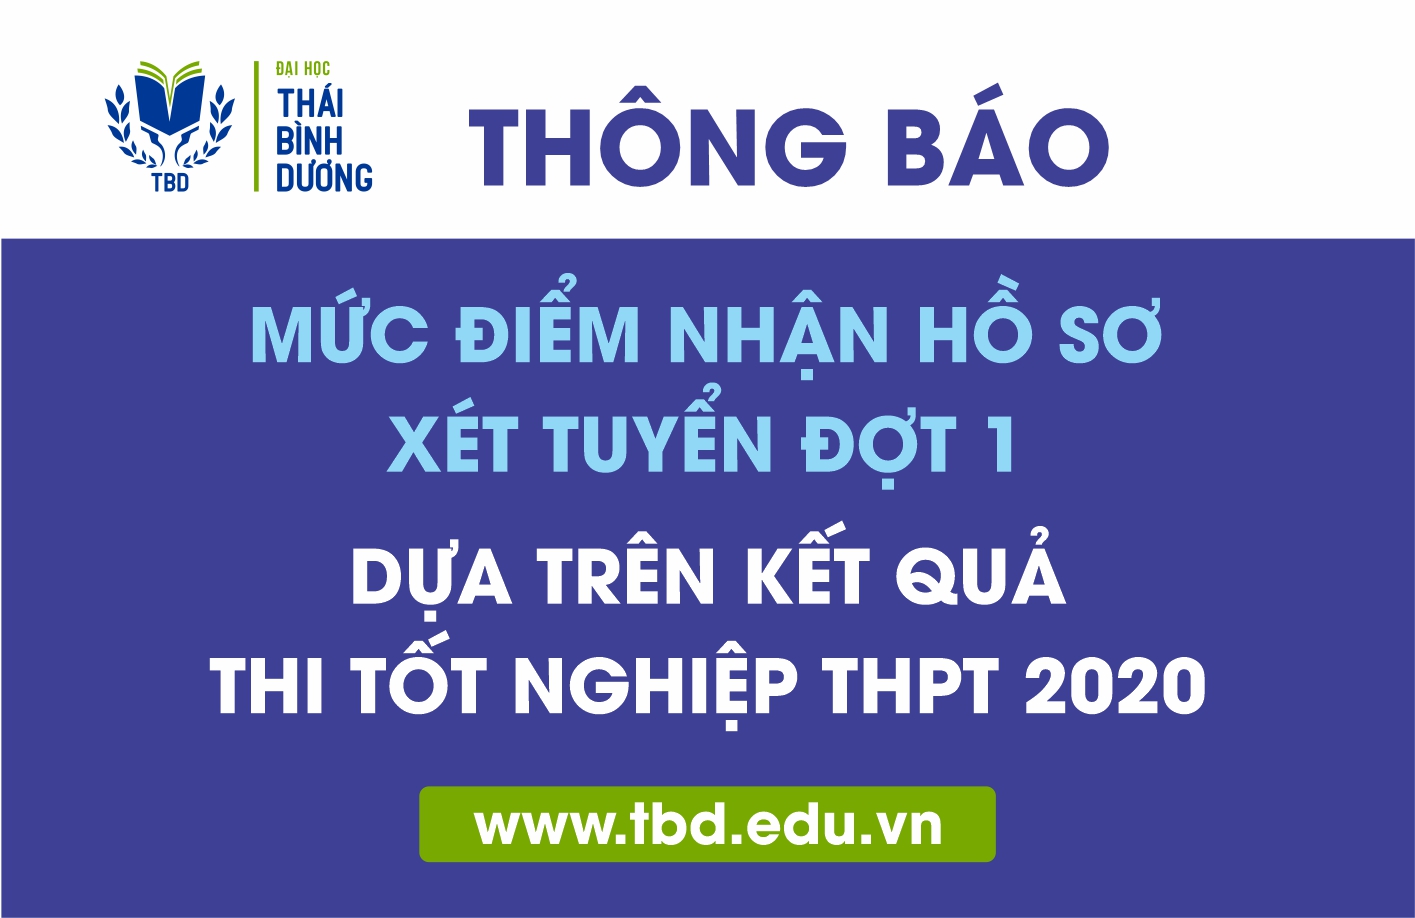 TBD thông báo mức điểm tối thiểu nhận hồ sơ xét tuyển đợt 1 dựa trên kết quả thi tốt nghiệp THPT 2020